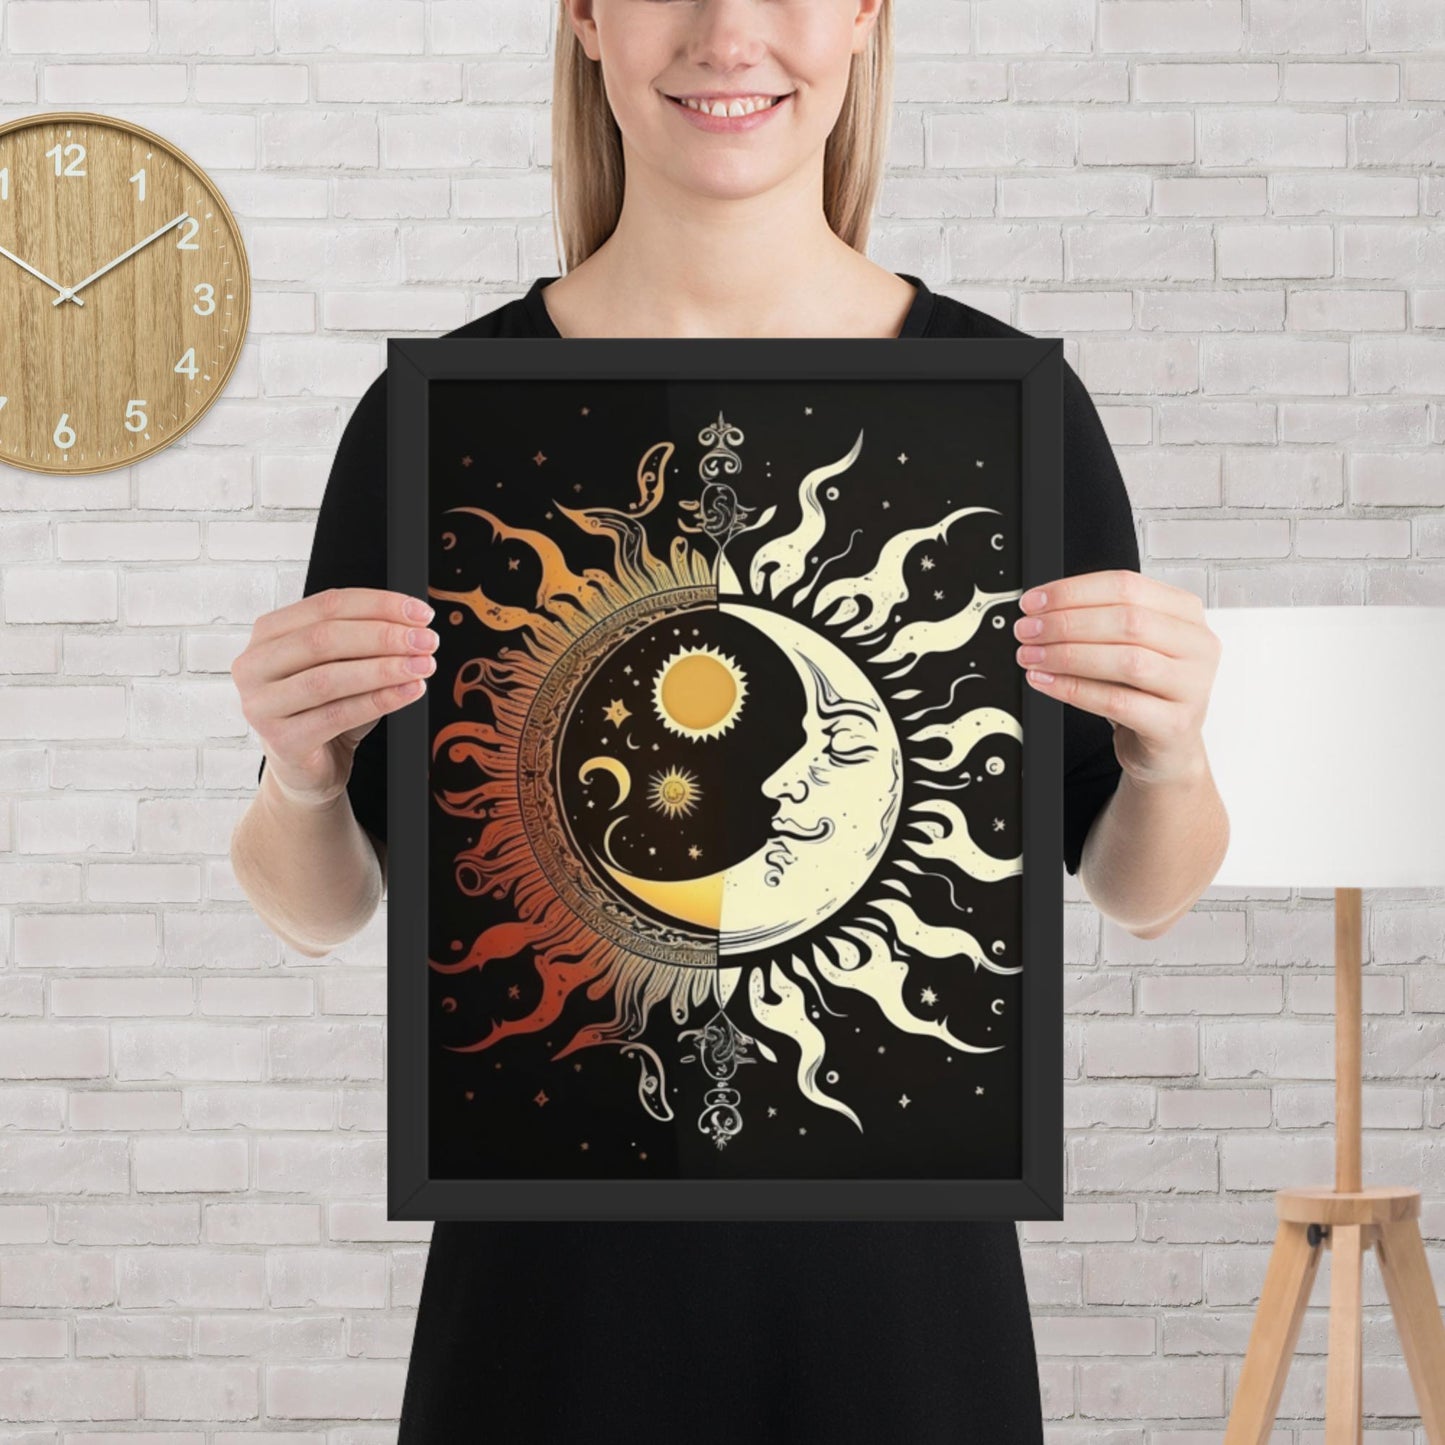 Art of Zen Celestial Moon Sun Framed Poster Decor Gift for Yoga Class